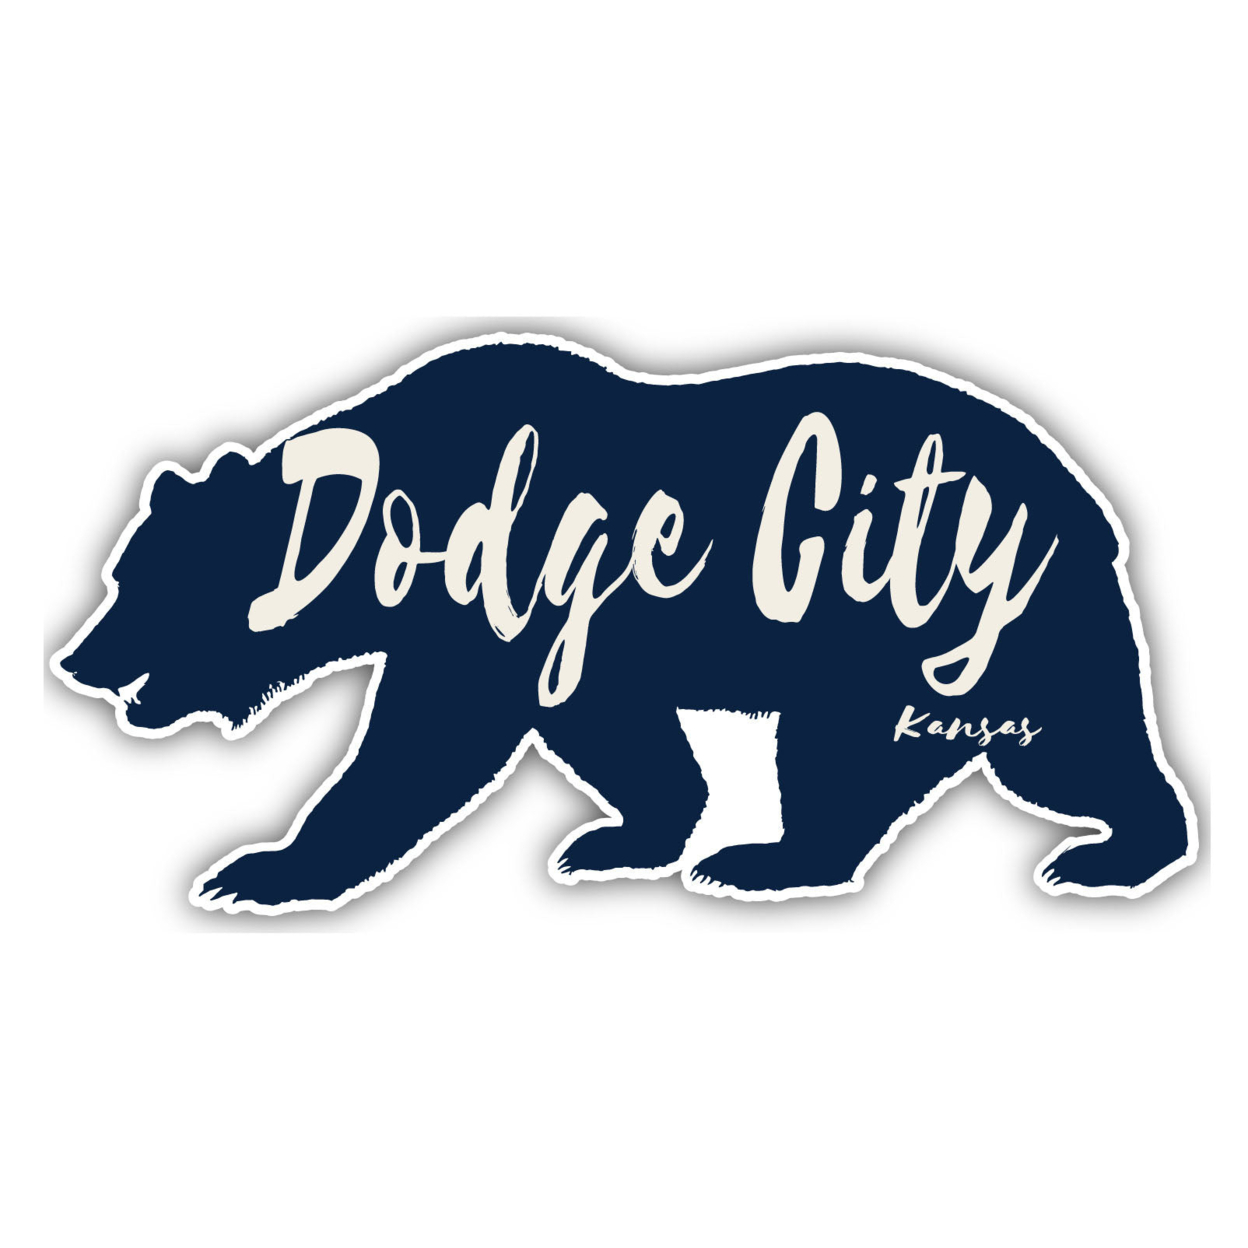 Dodge City Kansas Souvenir Decorative Stickers (Choose Theme And Size) - Single Unit, 12-Inch, Tent